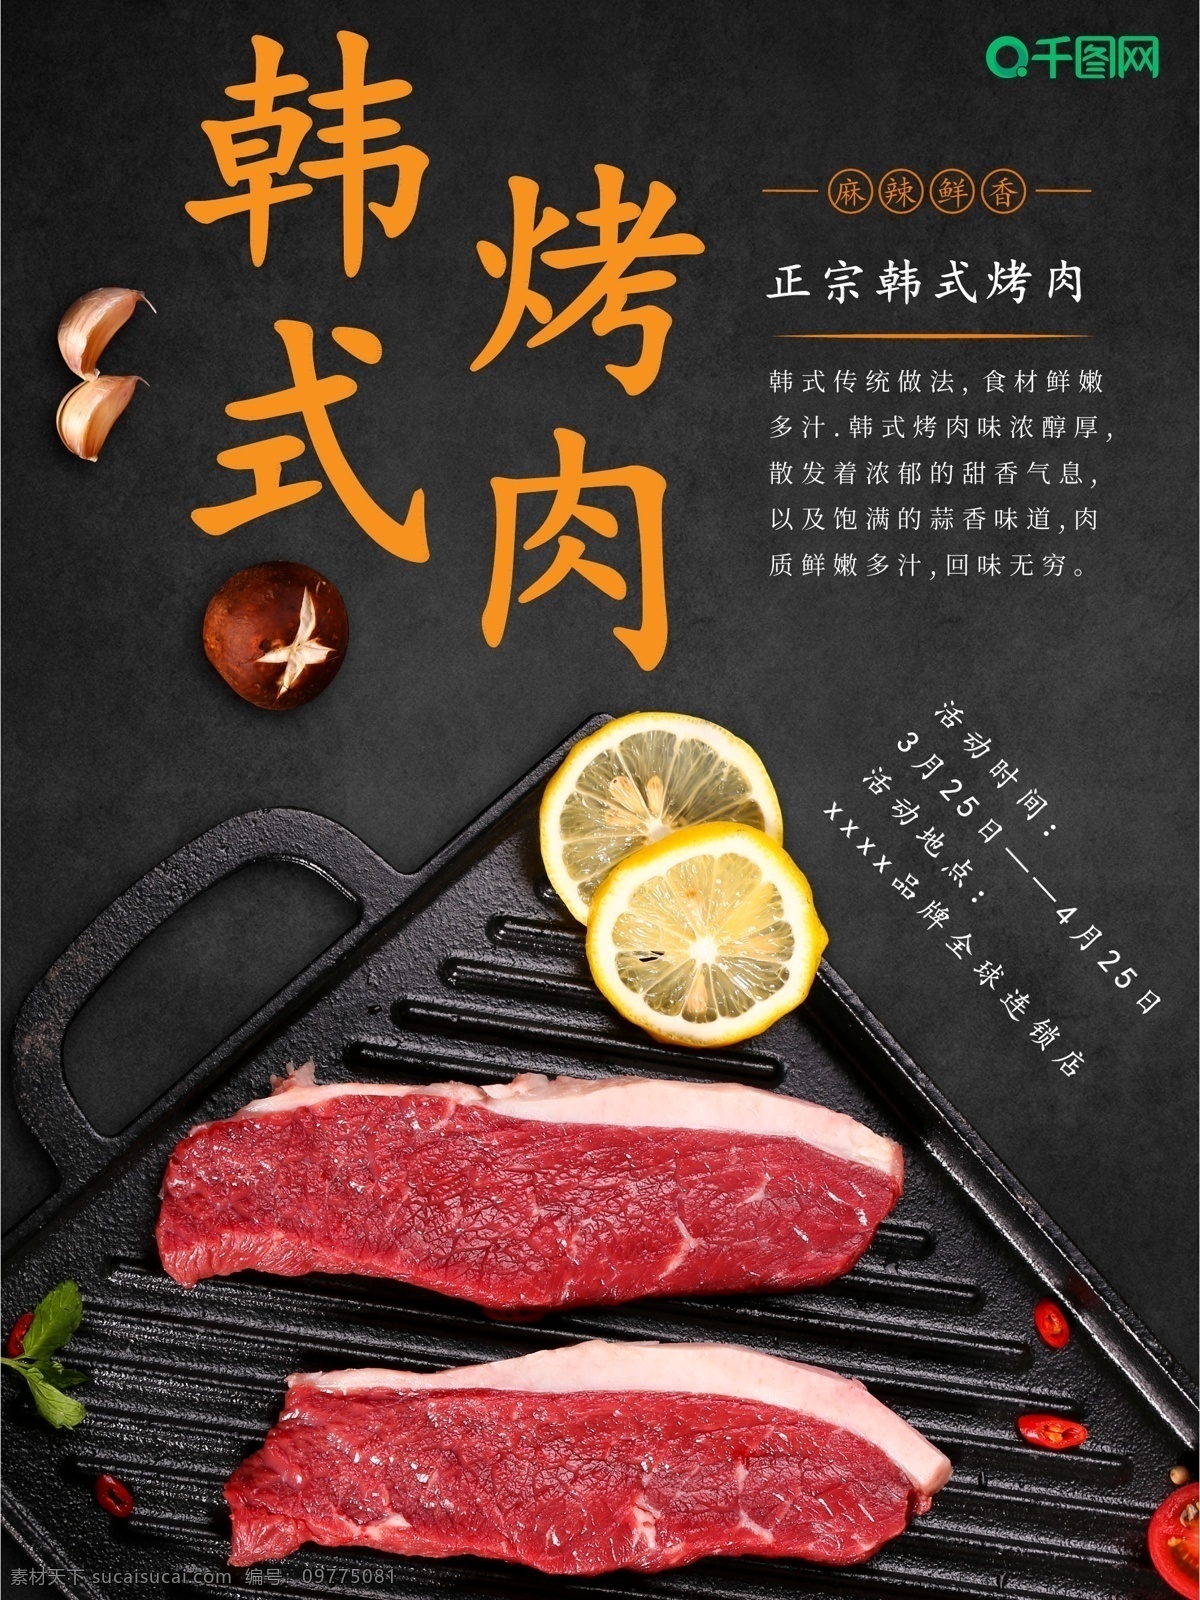 美食 主题 海报 韩式 烤肉 促销 韩国 料理